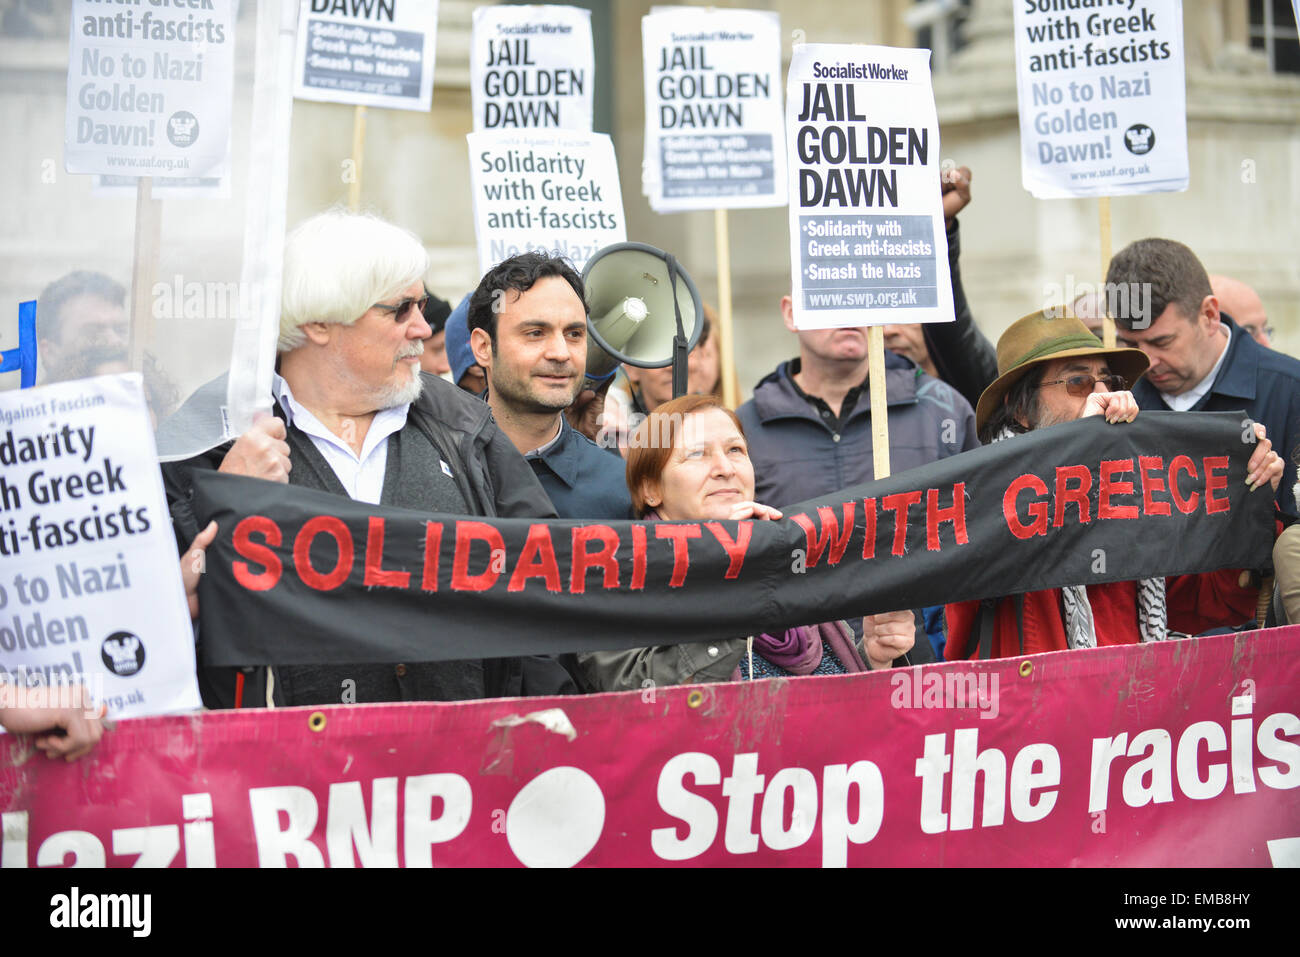 Trafalgar Square, Londres, Royaume-Uni. 19 avril 2015. Un groupe montrant leur solidarité avec l'étape anti fascistes grecs une démo à Trafalgar Square. Crédit : Matthieu Chattle/Alamy Live News Banque D'Images